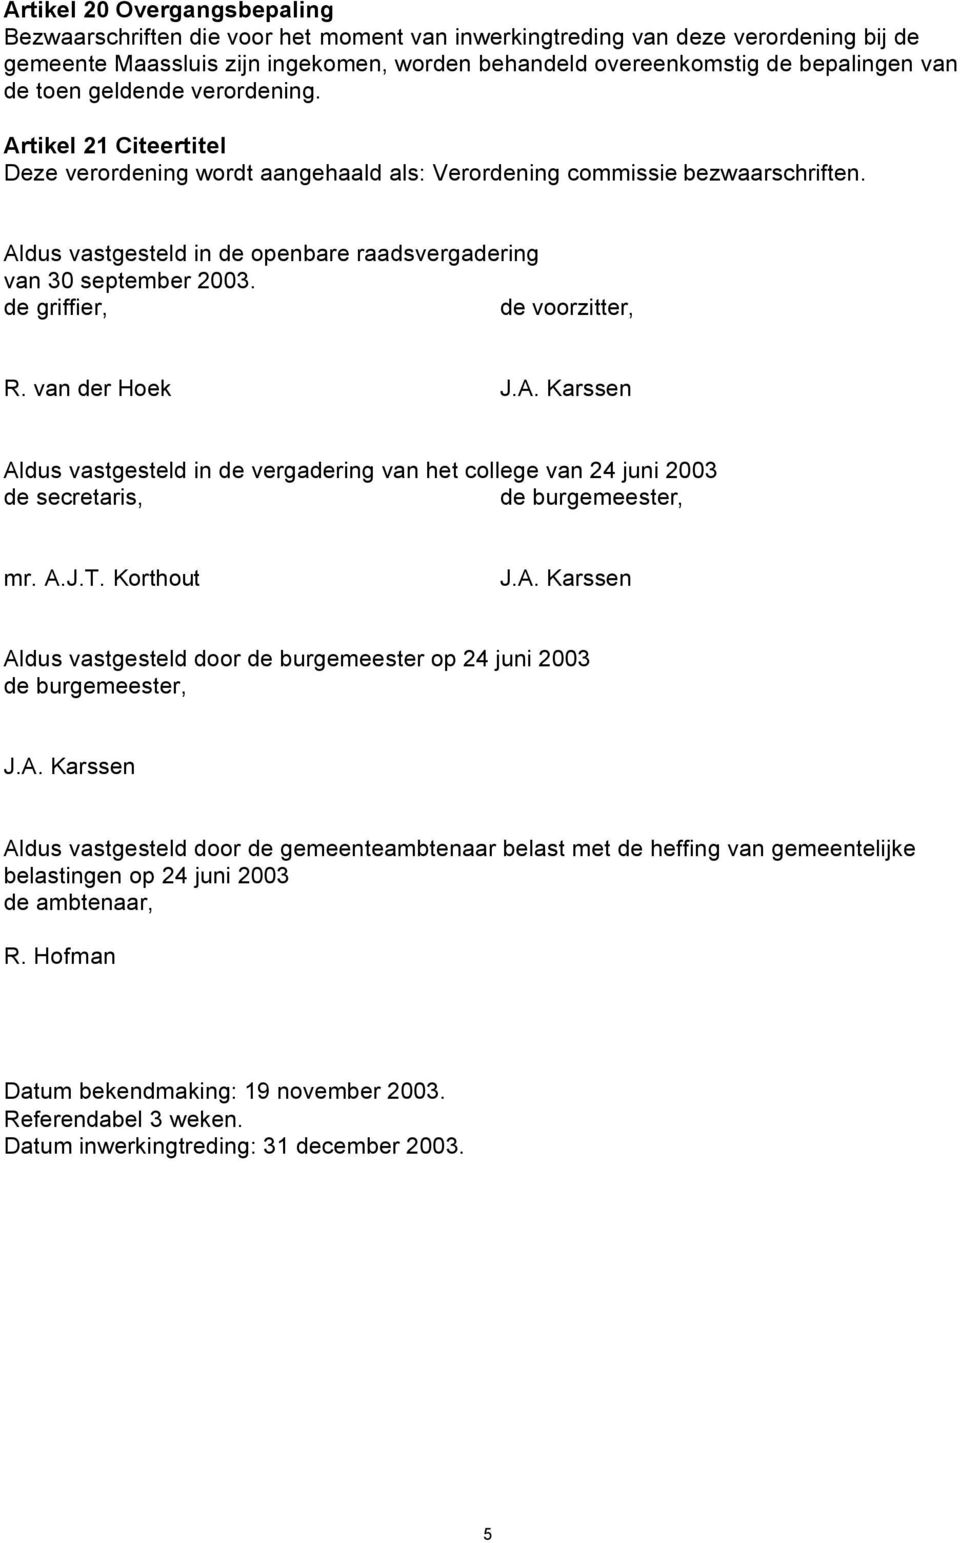 Aldus vastgesteld in de openbare raadsvergadering van 30 september 2003. de griffier, de voorzitter, R. van der Hoek J.A. Karssen Aldus vastgesteld in de vergadering van het college van 24 juni 2003 de secretaris, de burgemeester, mr.